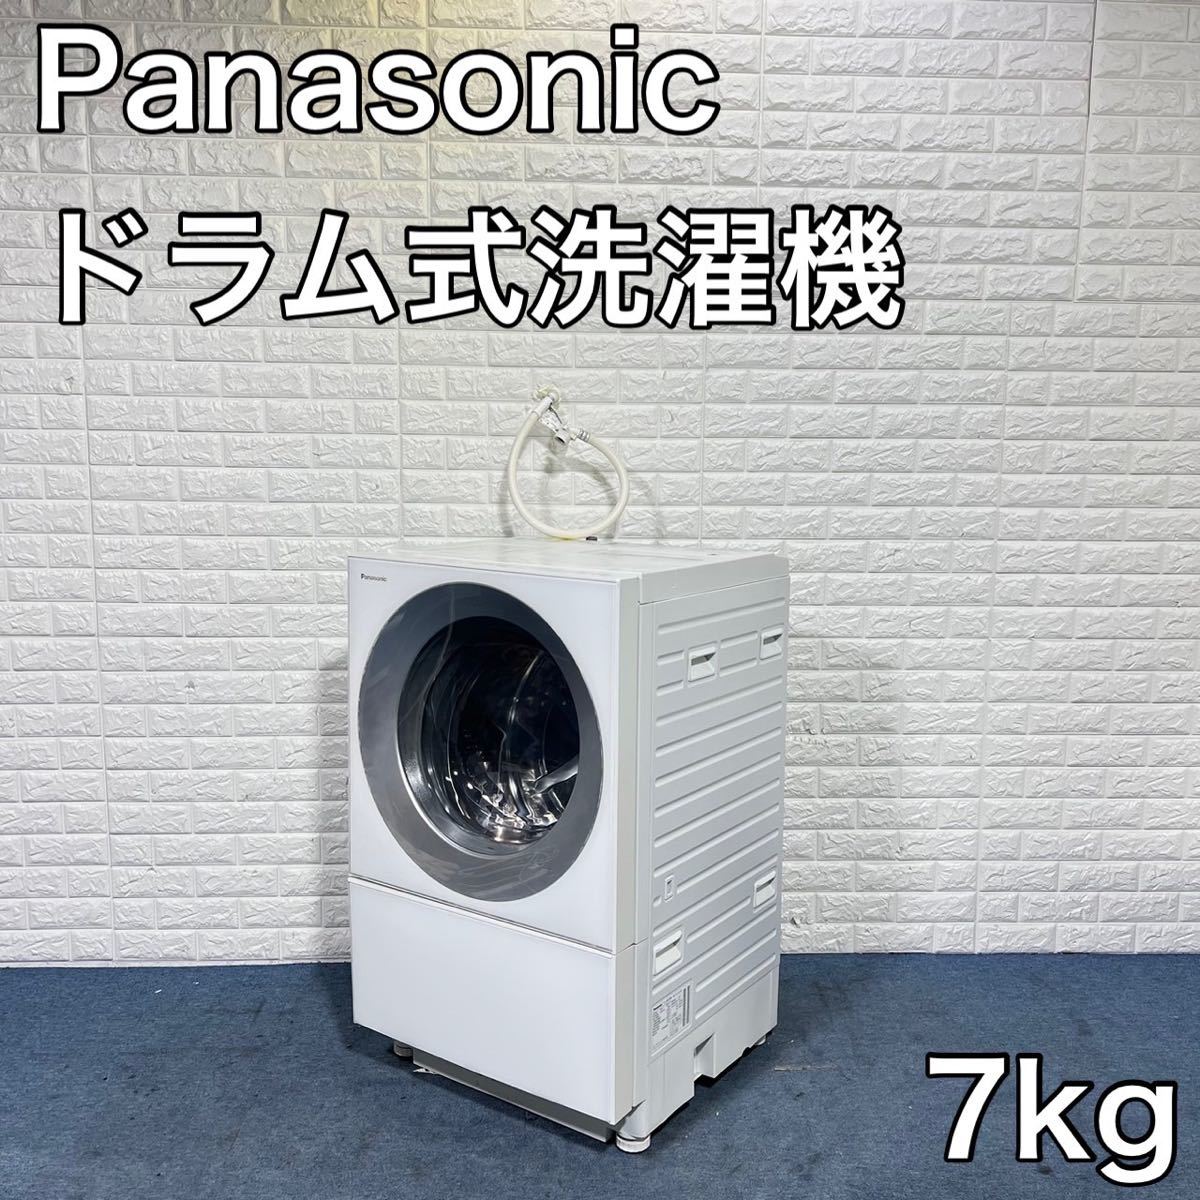 パナソニックドラム式洗濯機7キロ - 洗濯機